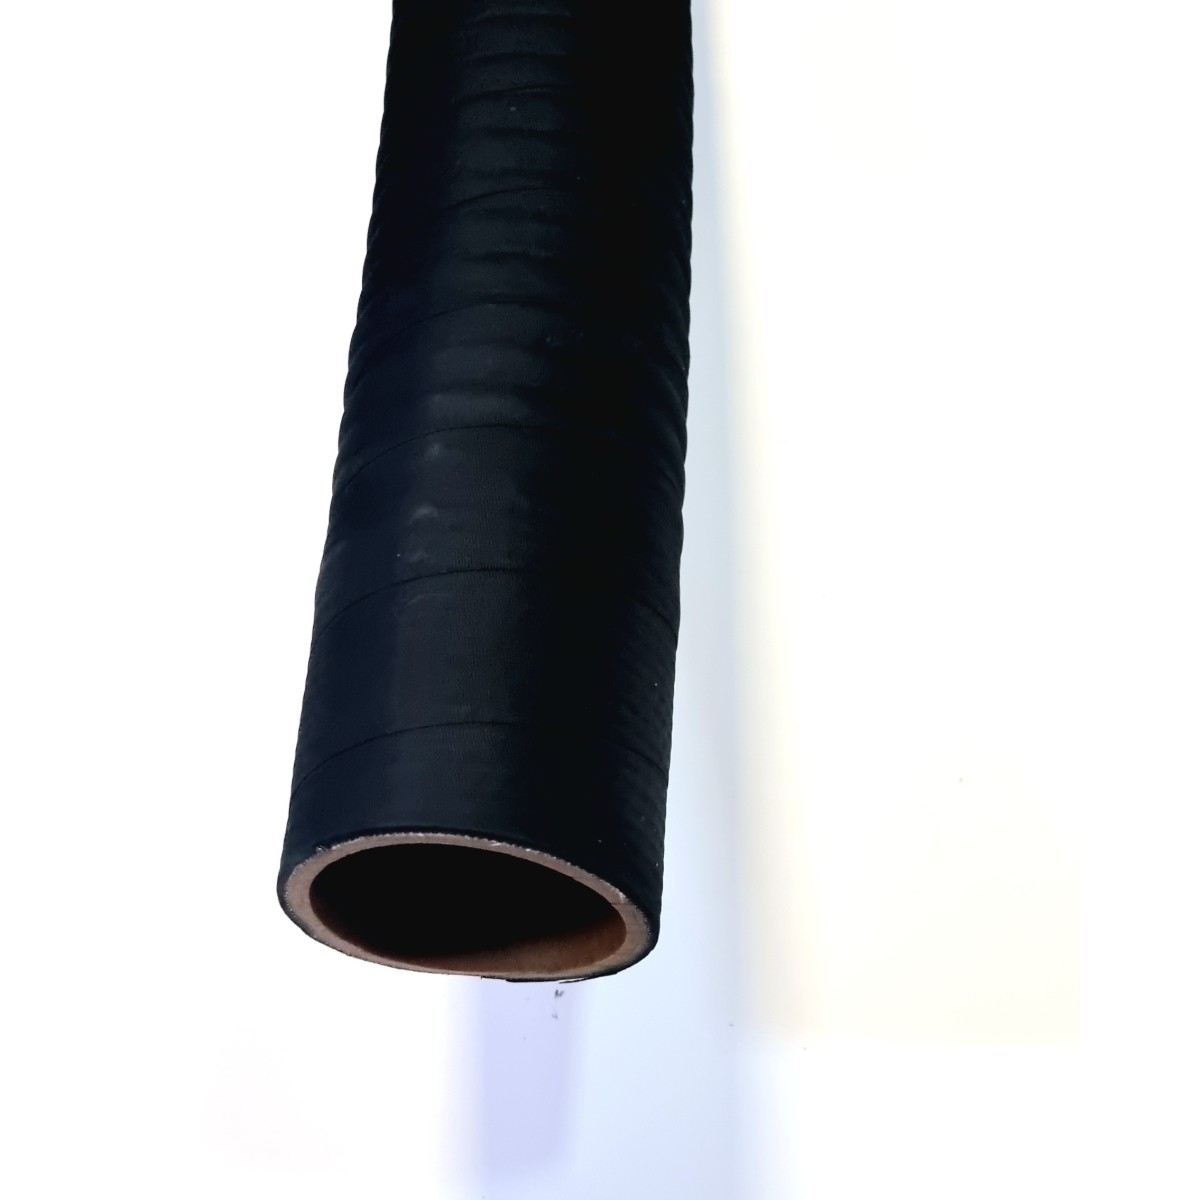 Tuyau de refoulement PVC pour motopompe longueur 50 mètres diam 80 mm.